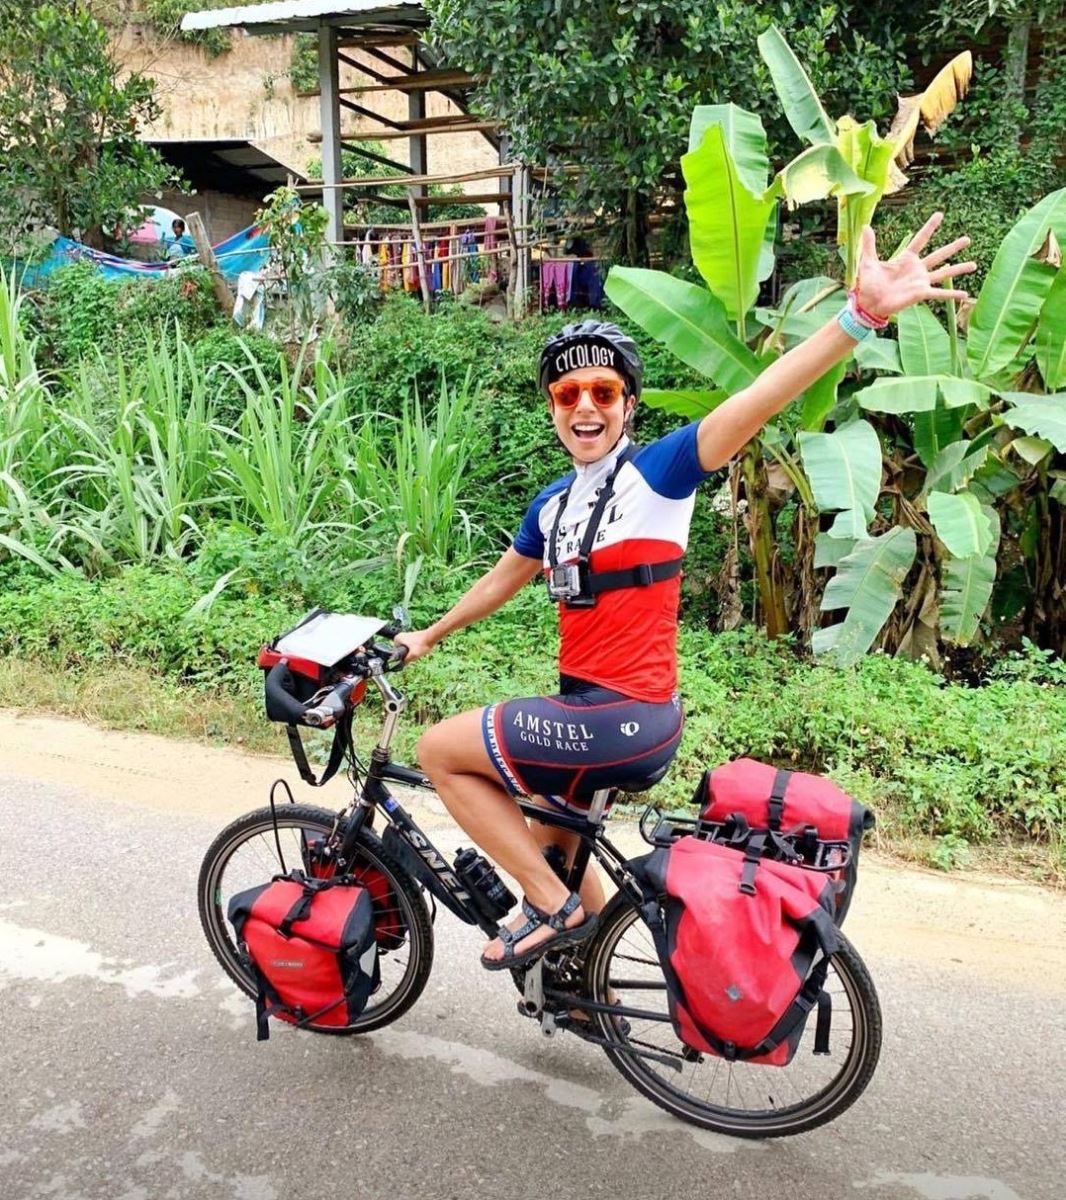 Khi đi du lịch Thái Lan bằng xe đạp lại không cần nhiều loại giấy tờ đâu